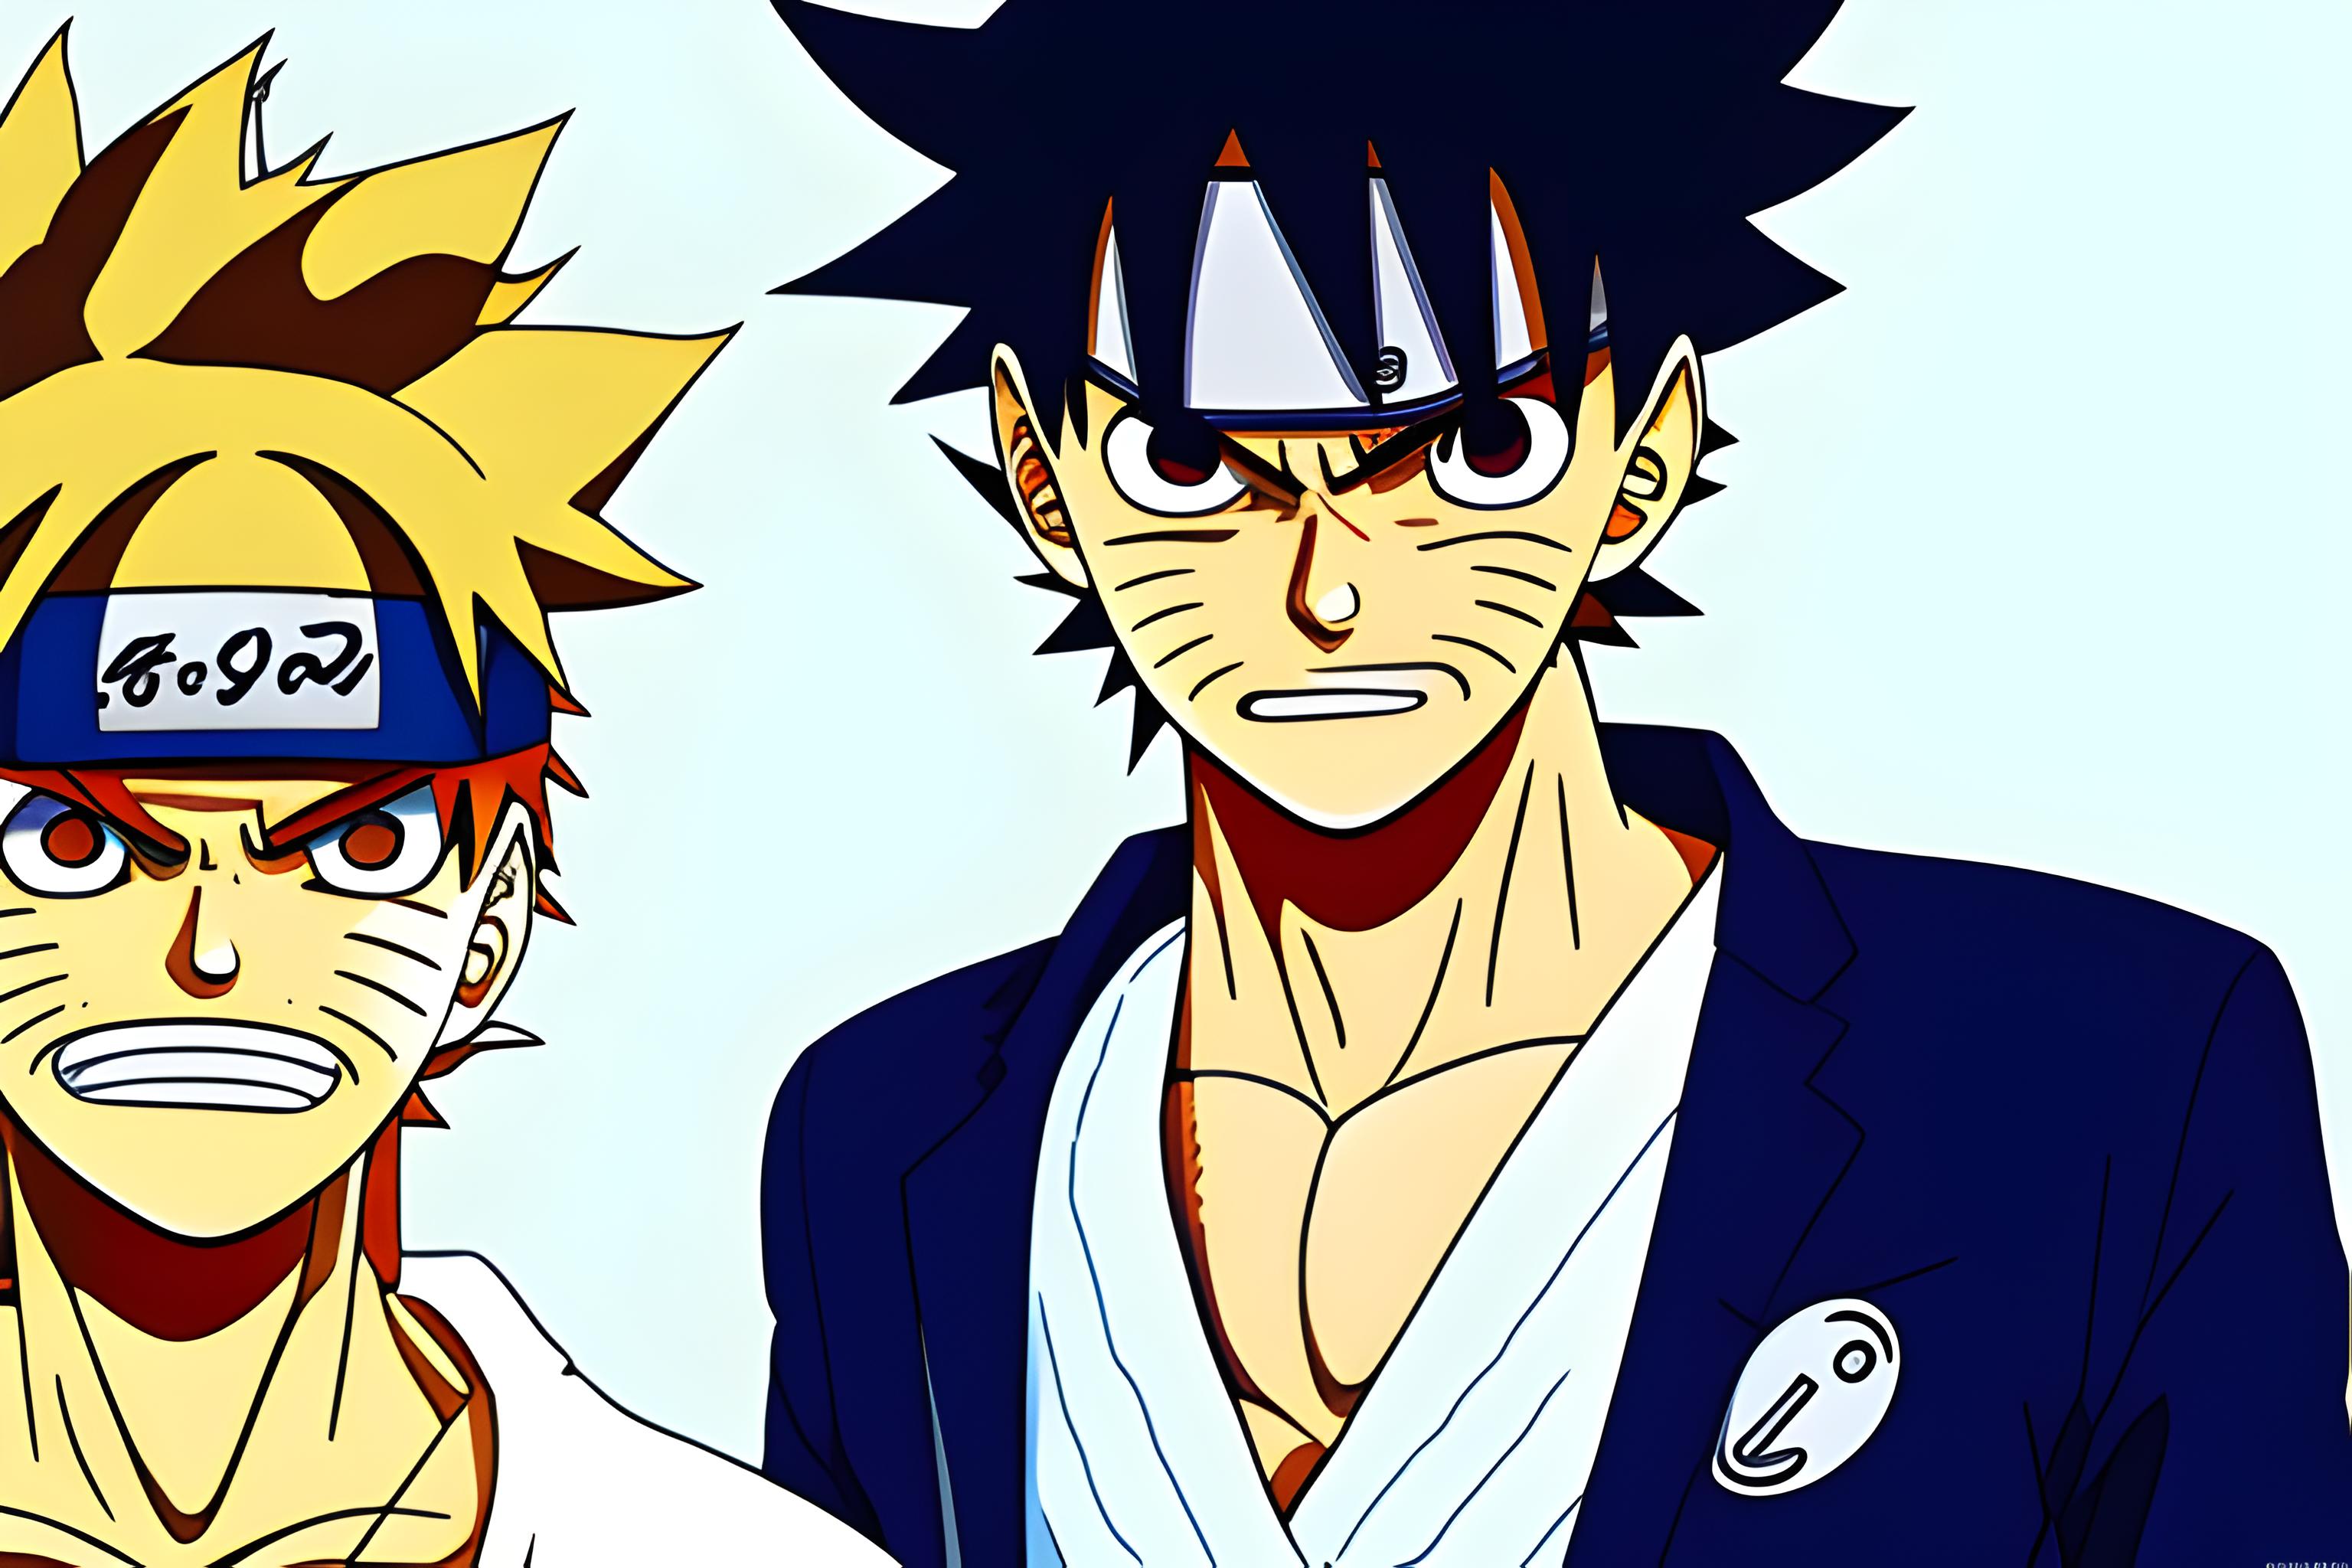 Naruto, Songoku, Luffy: Ai là người “trong sáng” nhất?